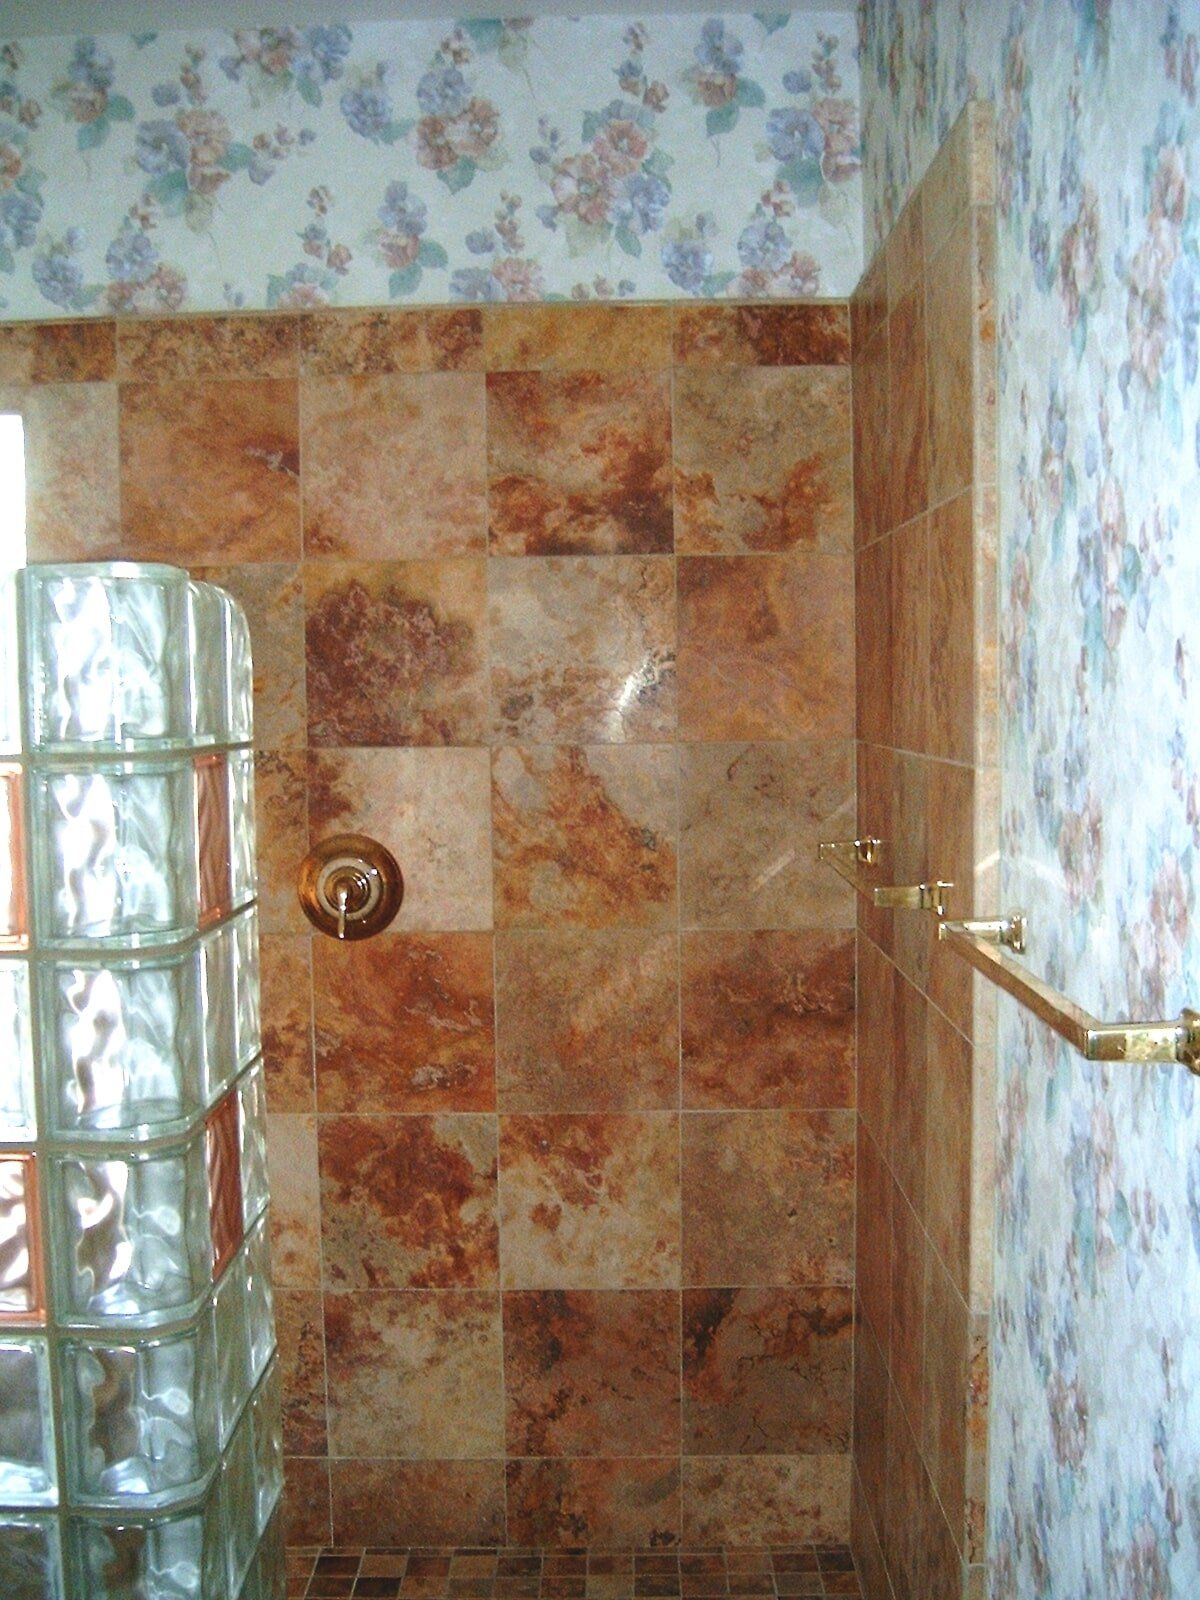 Tile & glass block Snail shower remodel Surprise AZ 4